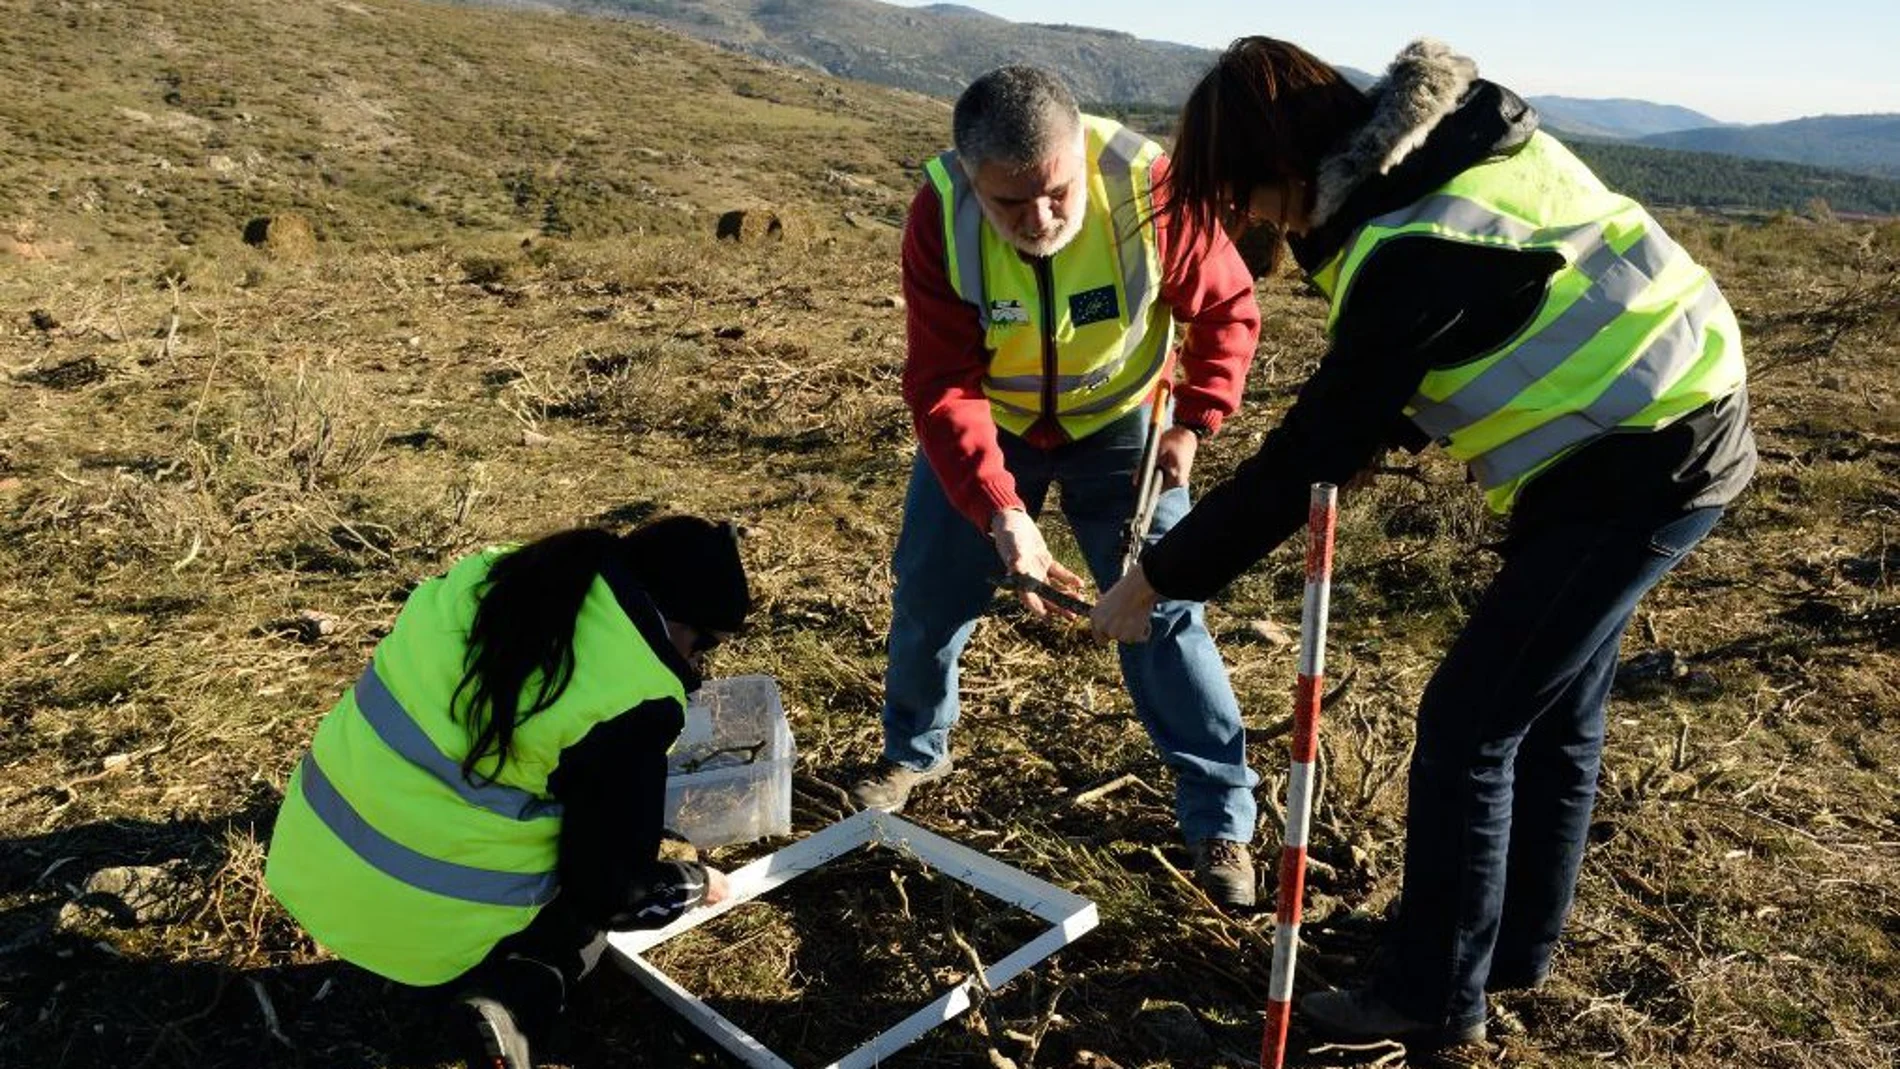 Proyecto europeo EnerbioScrub para estudiar el impacto que el desbroce puede tener sobre el suelo